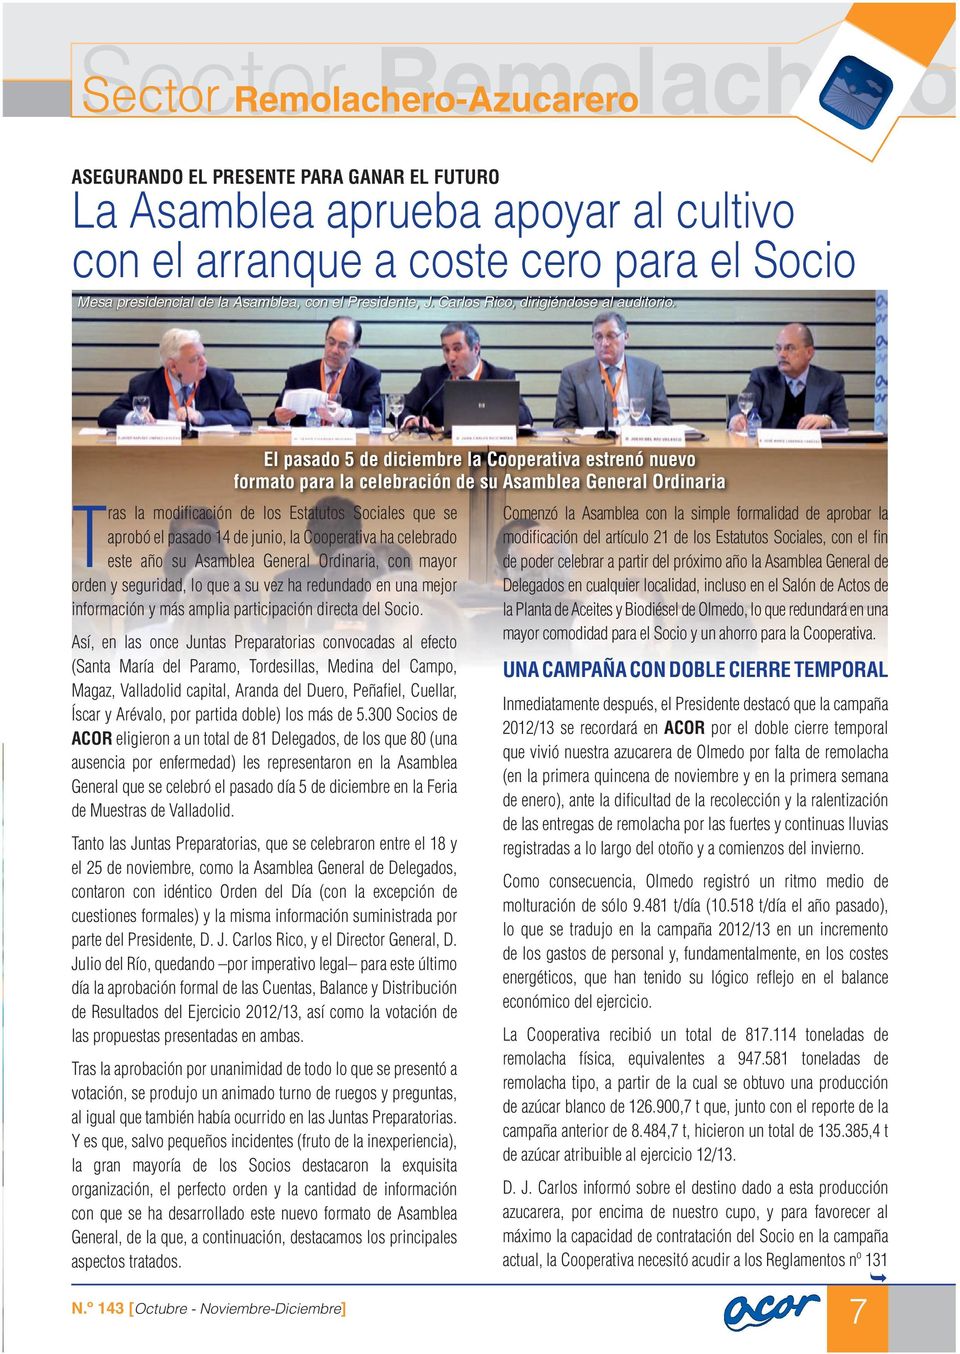 El pasado 5 de diciembre la Cooperativa estrenó nuevo formato para la celebración de su Asamblea General Ordinaria Tras la modifi cación de los Estatutos Sociales que se aprobó el pasado 14 de junio,